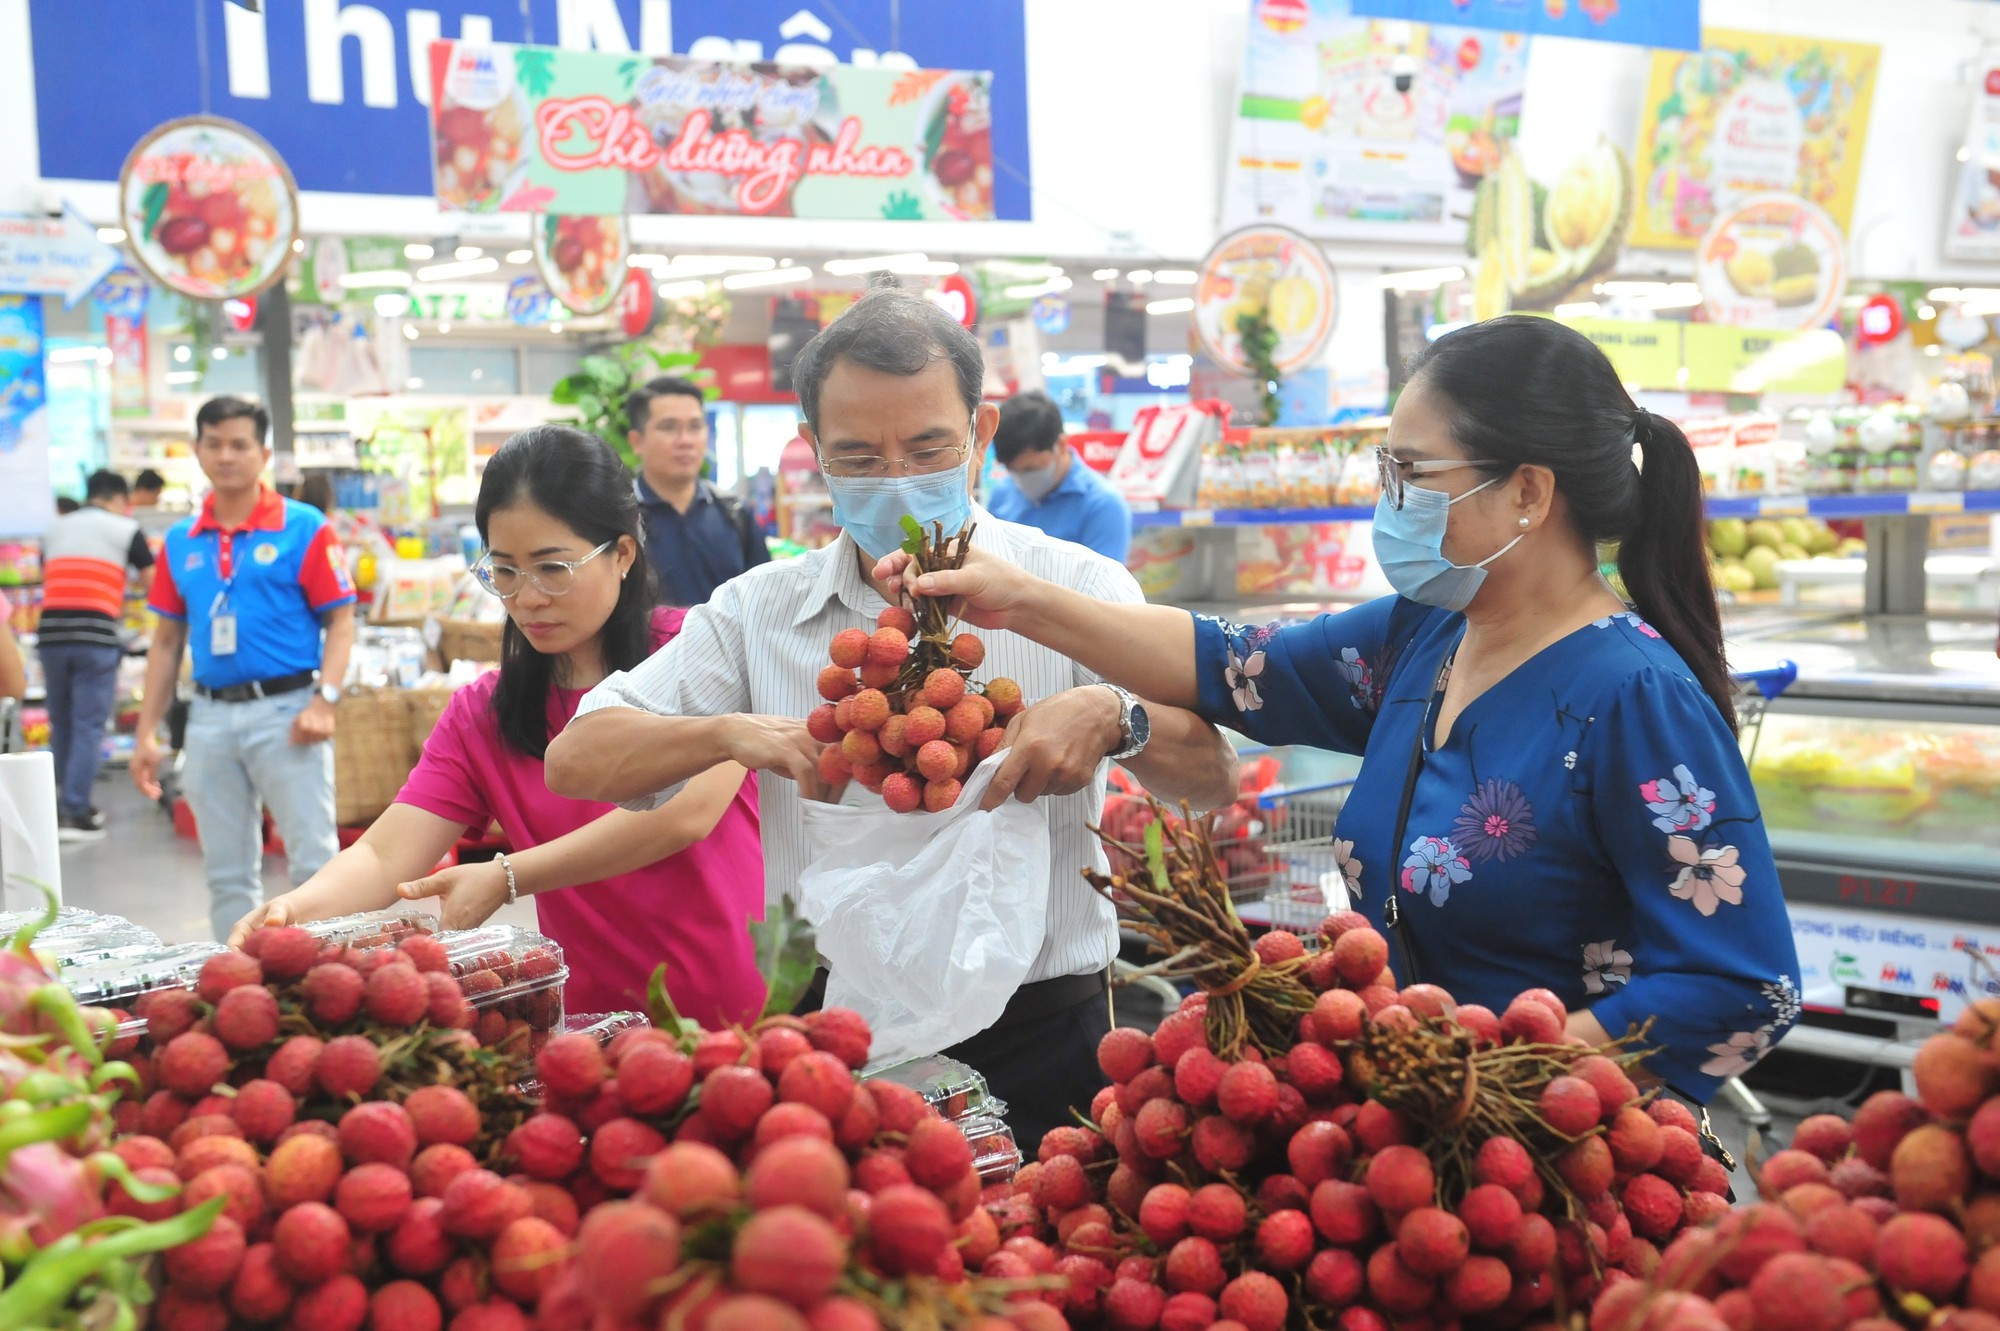 Vải thiều Bắc Giang ngập siêu thị Sài Gòn với giá sốc tận gốc, chỉ hơn 20.000 đồng/kg - Ảnh 1.